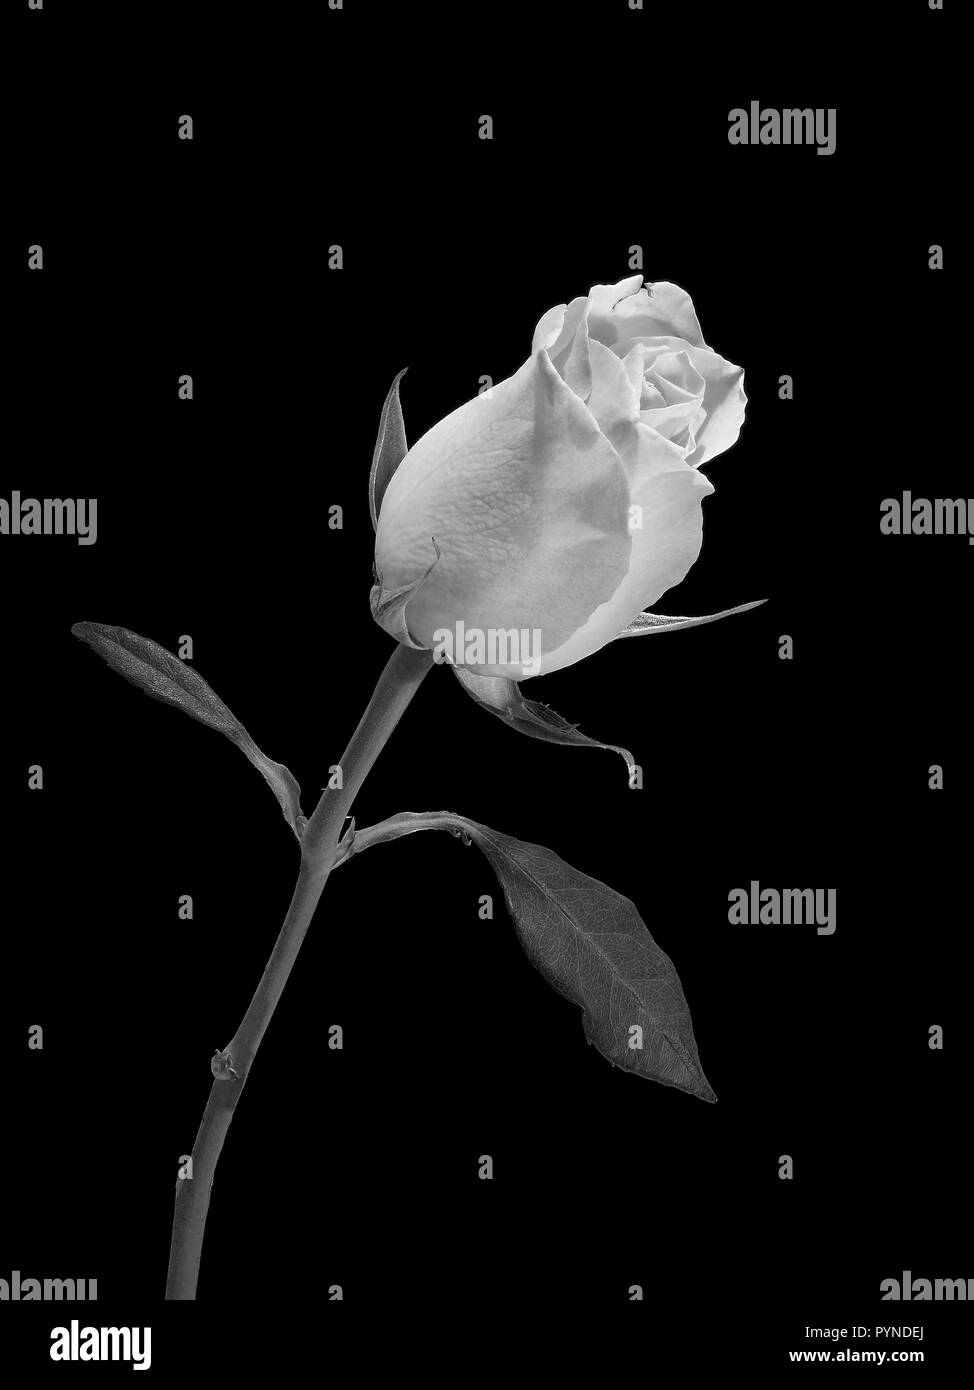 Un portrait d'une rose avec sa tige et feuilles prises en noir et blanc avec un fond noir Banque D'Images